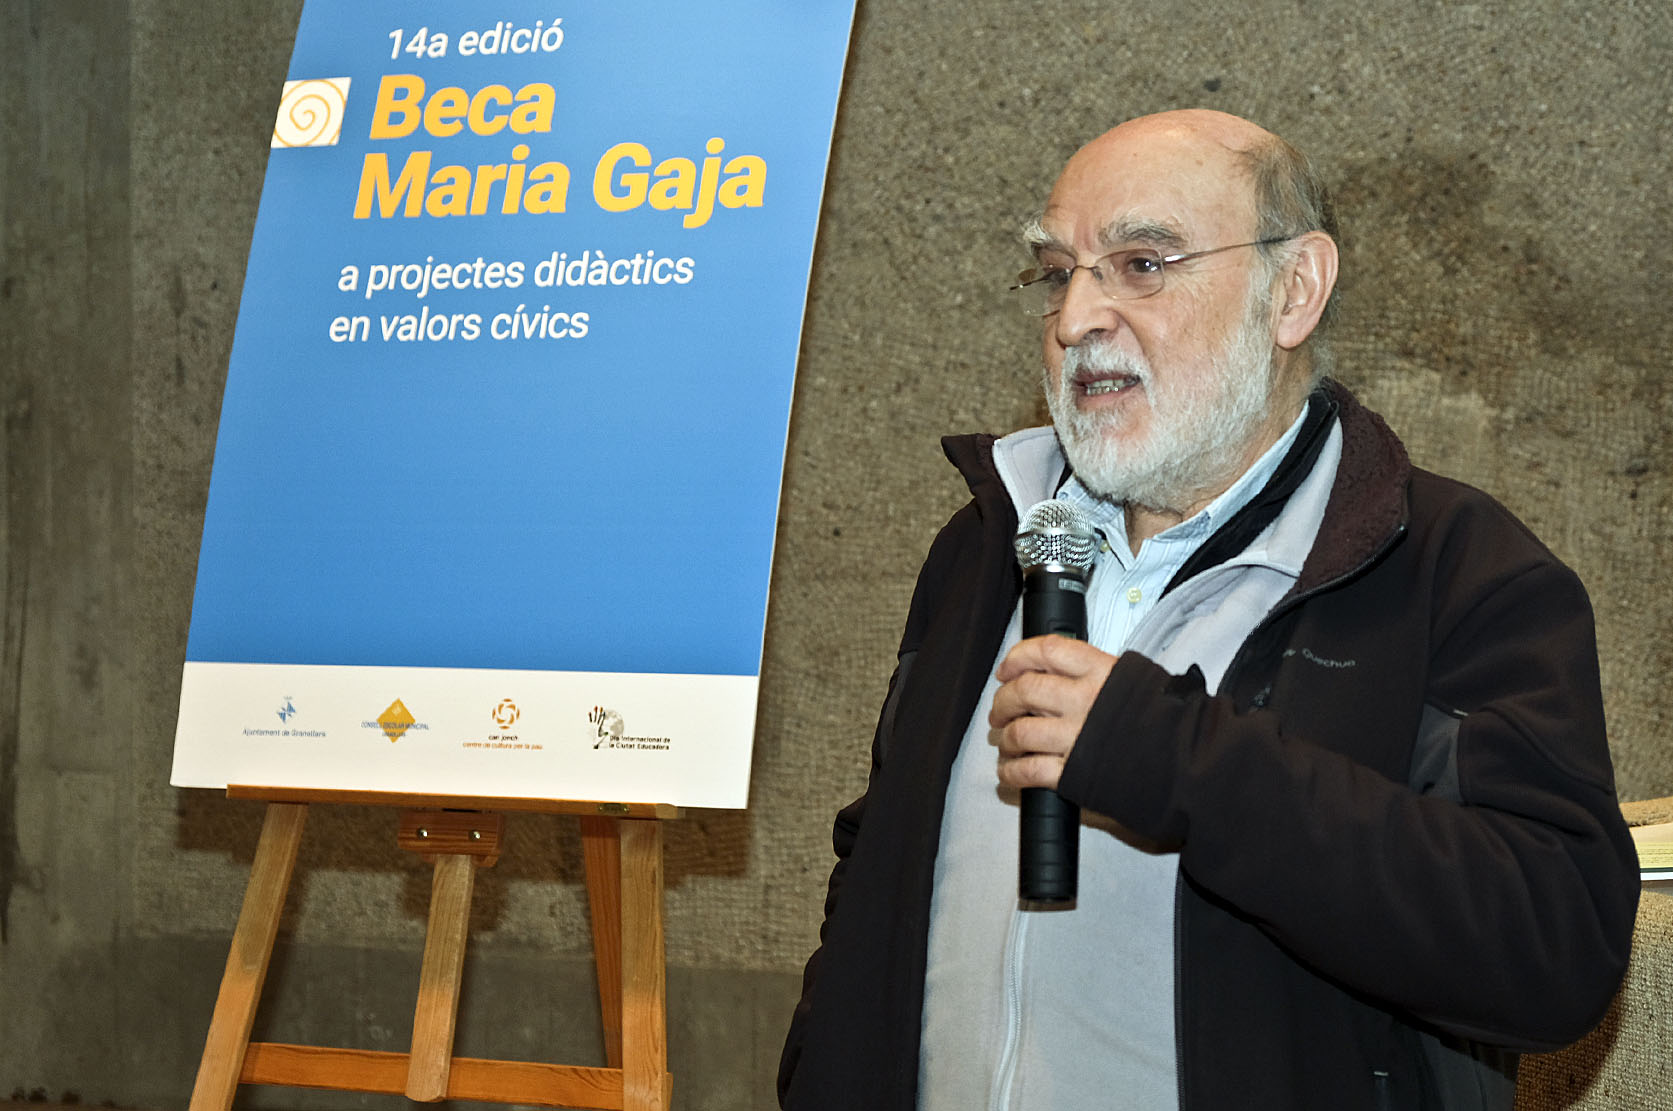 El president de l'Associació, Josep Manel Sebastià, va agair la concessió de la beca